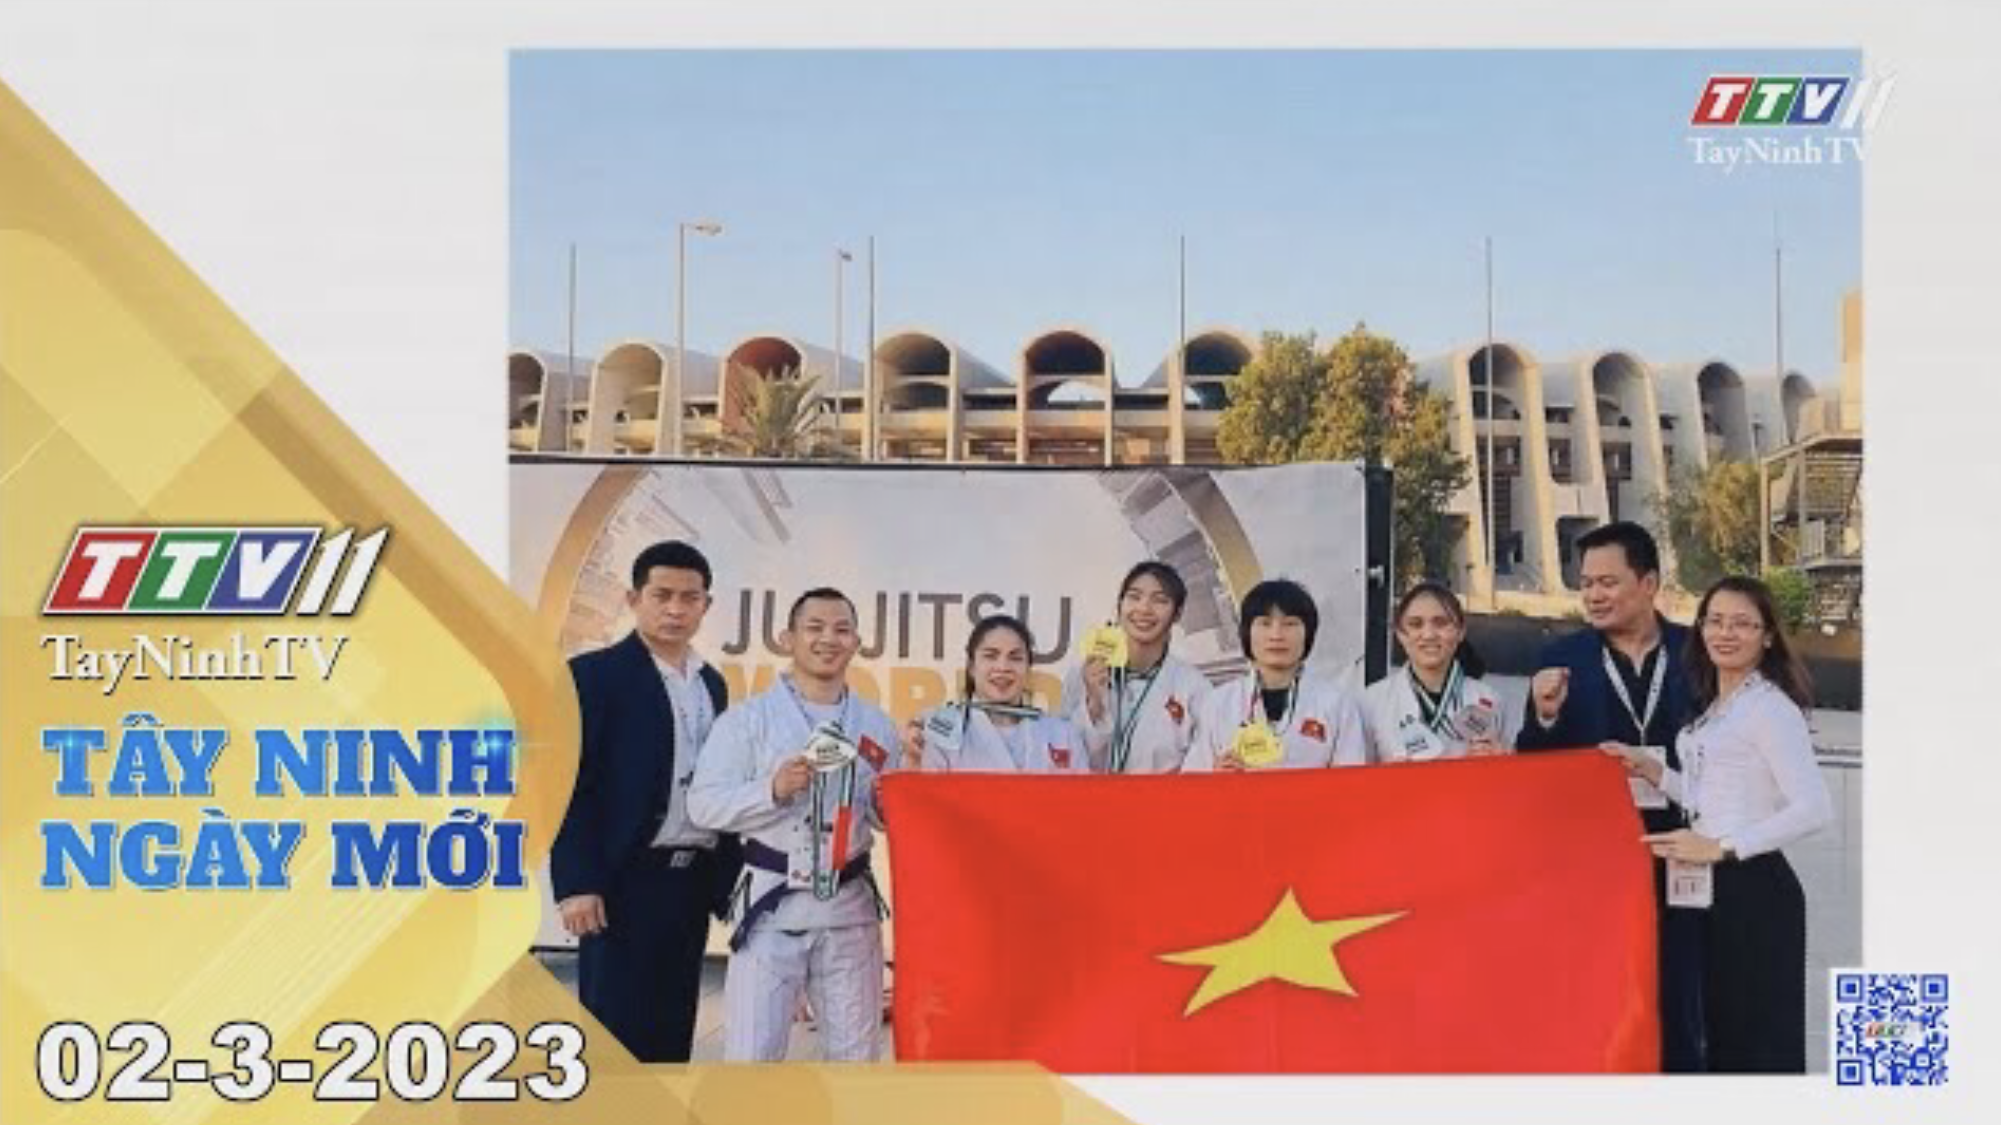 Tây Ninh ngày mới 02-3-2023 | Tin tức hôm nay | TayNinhTV